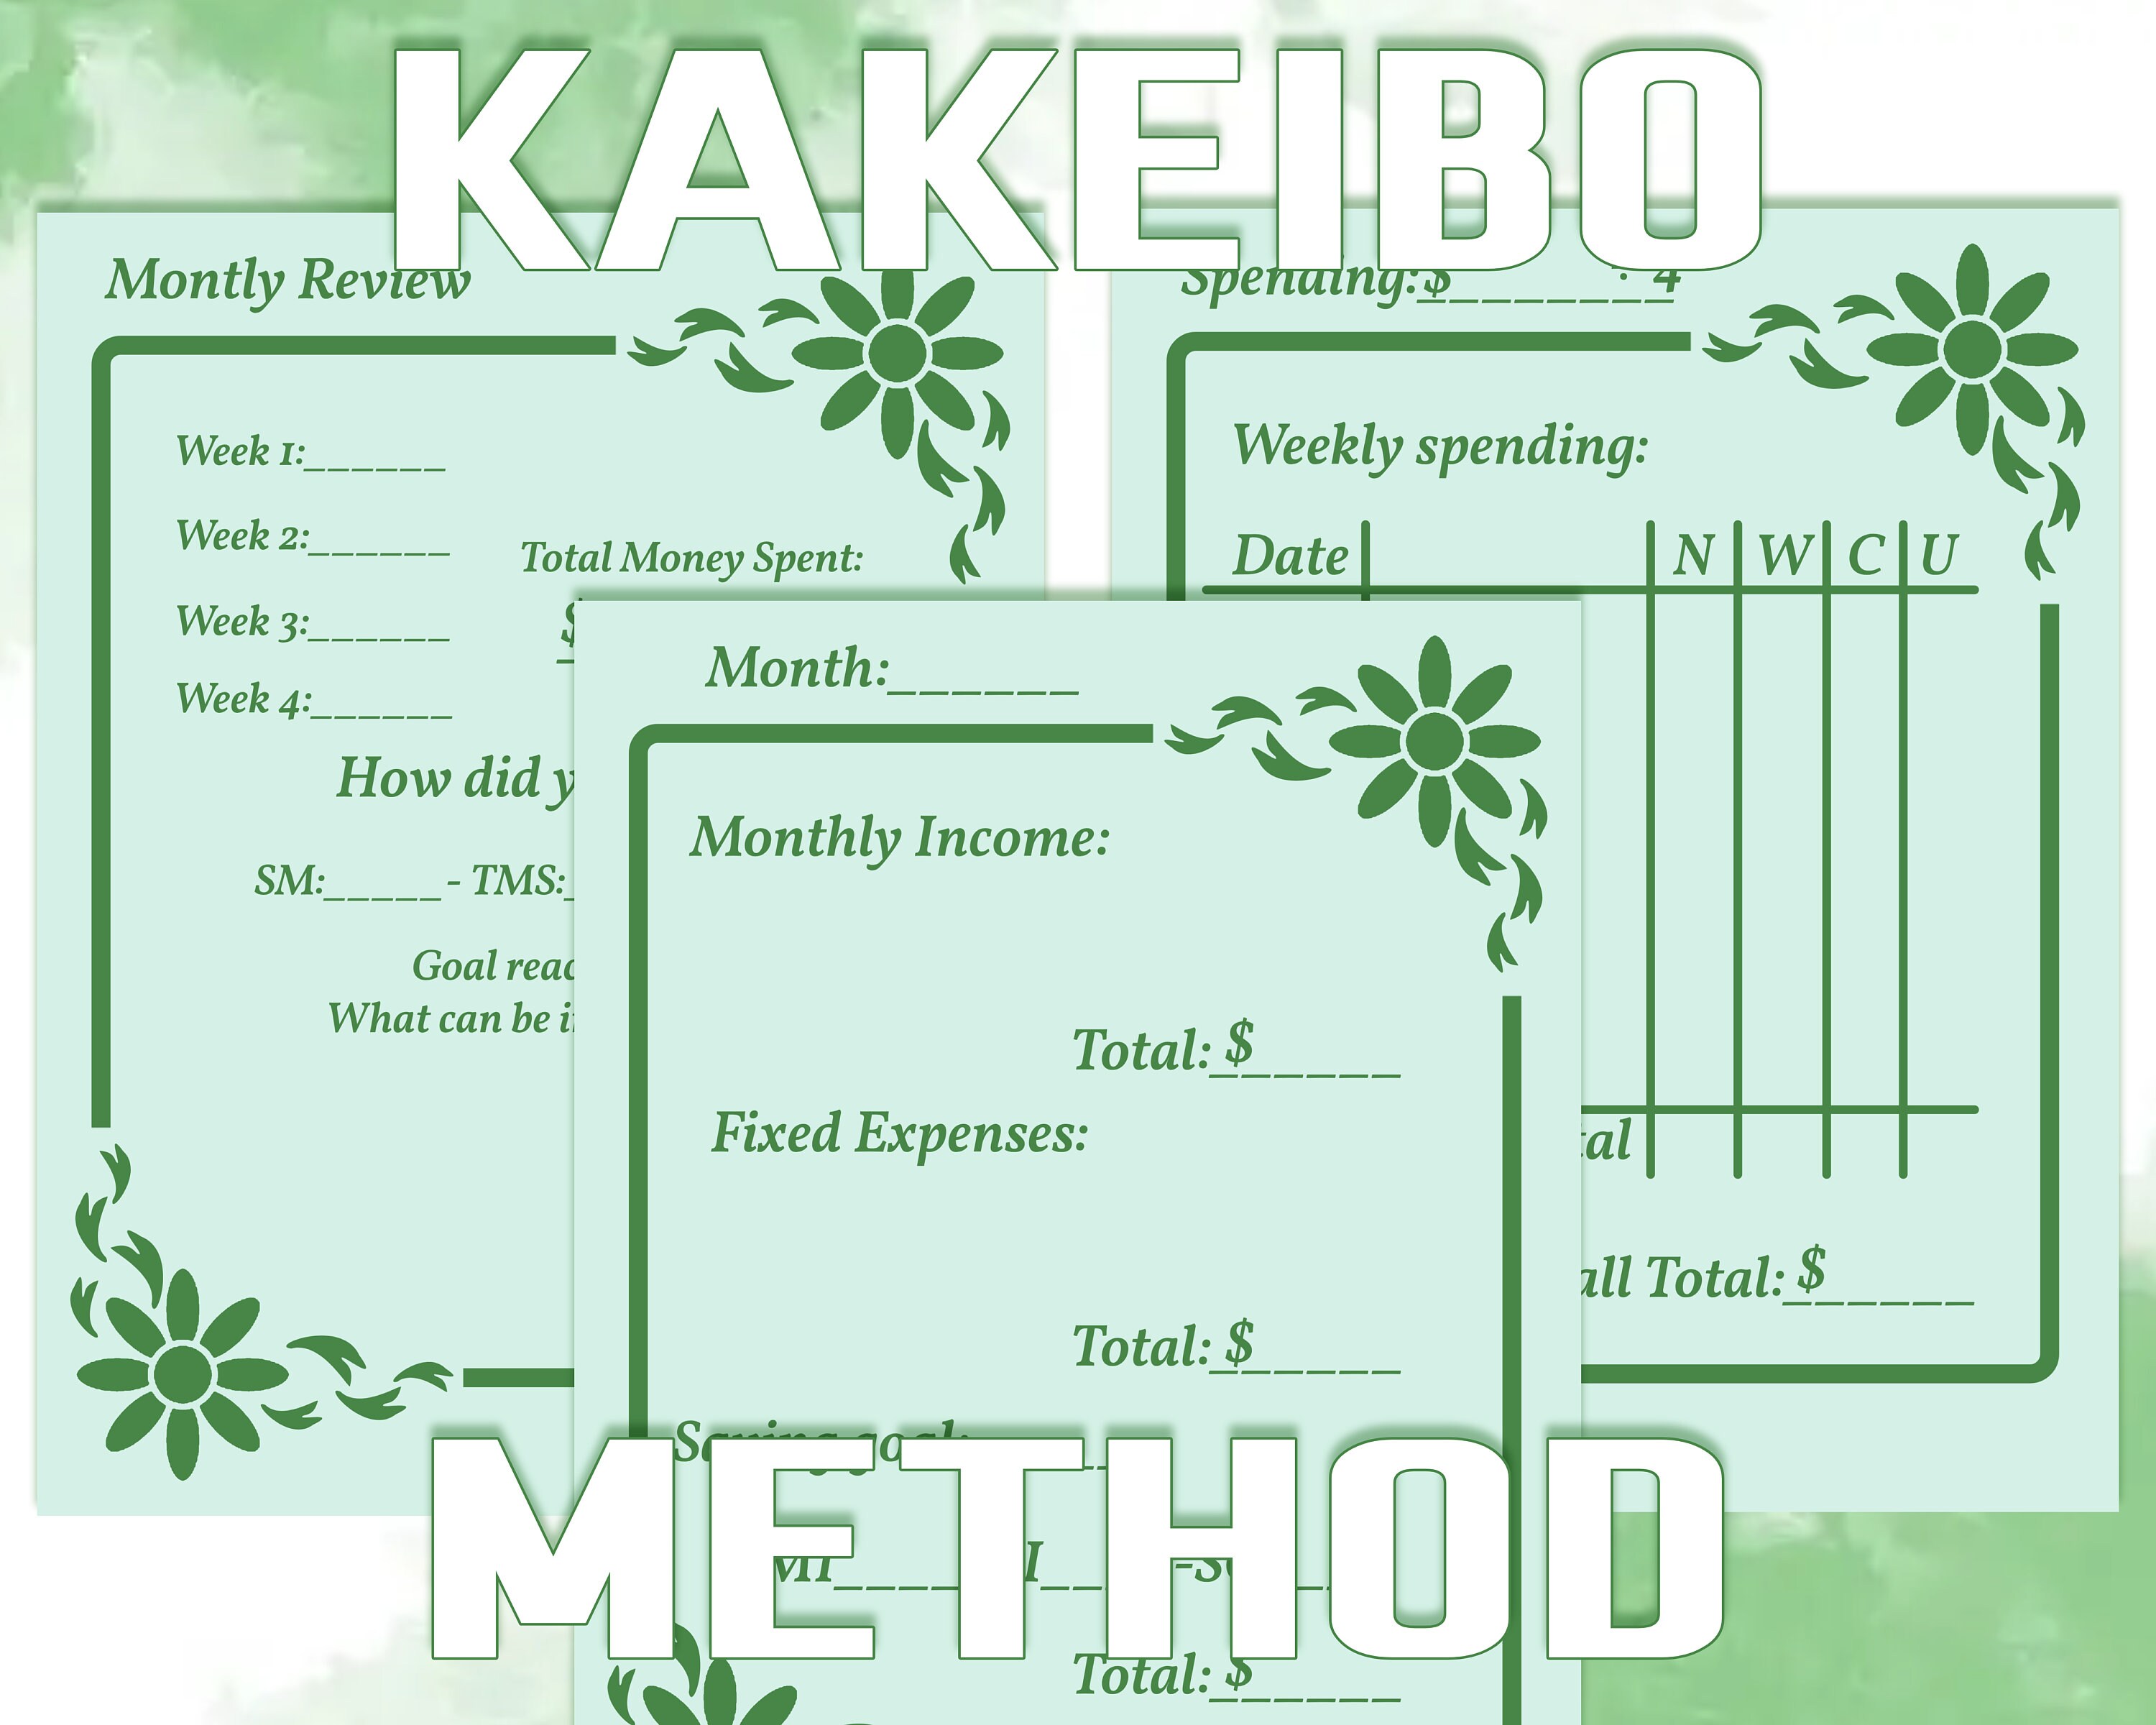 Planificador financiero de Kakebo imprimible, Diario de presupuesto de  Kakebo, Plantilla de presupuesto de Kakebo, Hoja de trabajo de Kakebo,  Diario de presupuesto, Plan de presupuesto de Kakeibo -  España